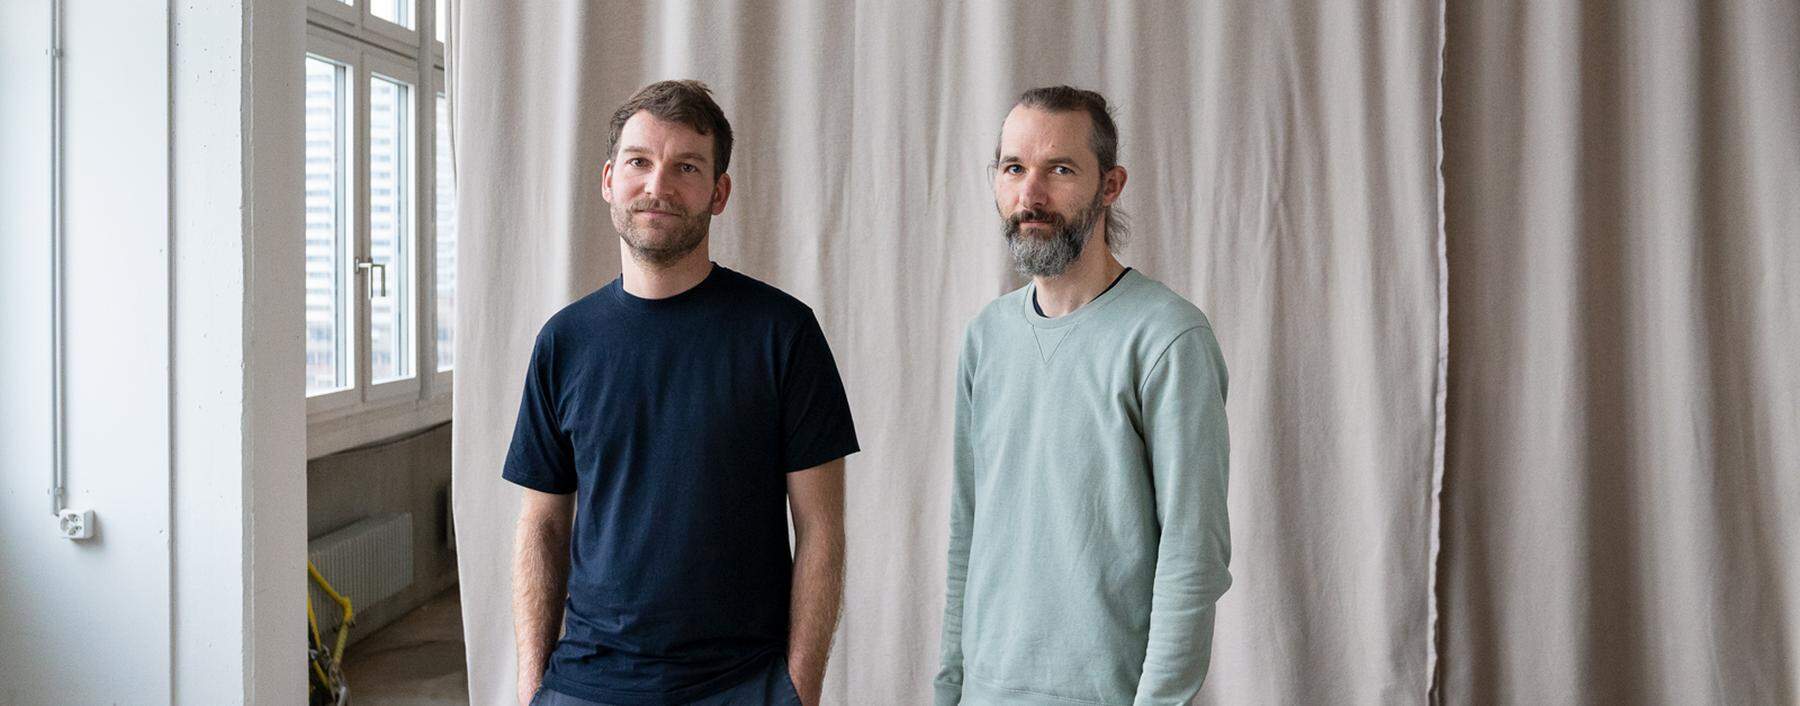 Michael Meier (links) und Christoph Franz widmen sich von Zürich aus künstlerischen Projekten in verschiedenen Städten. 